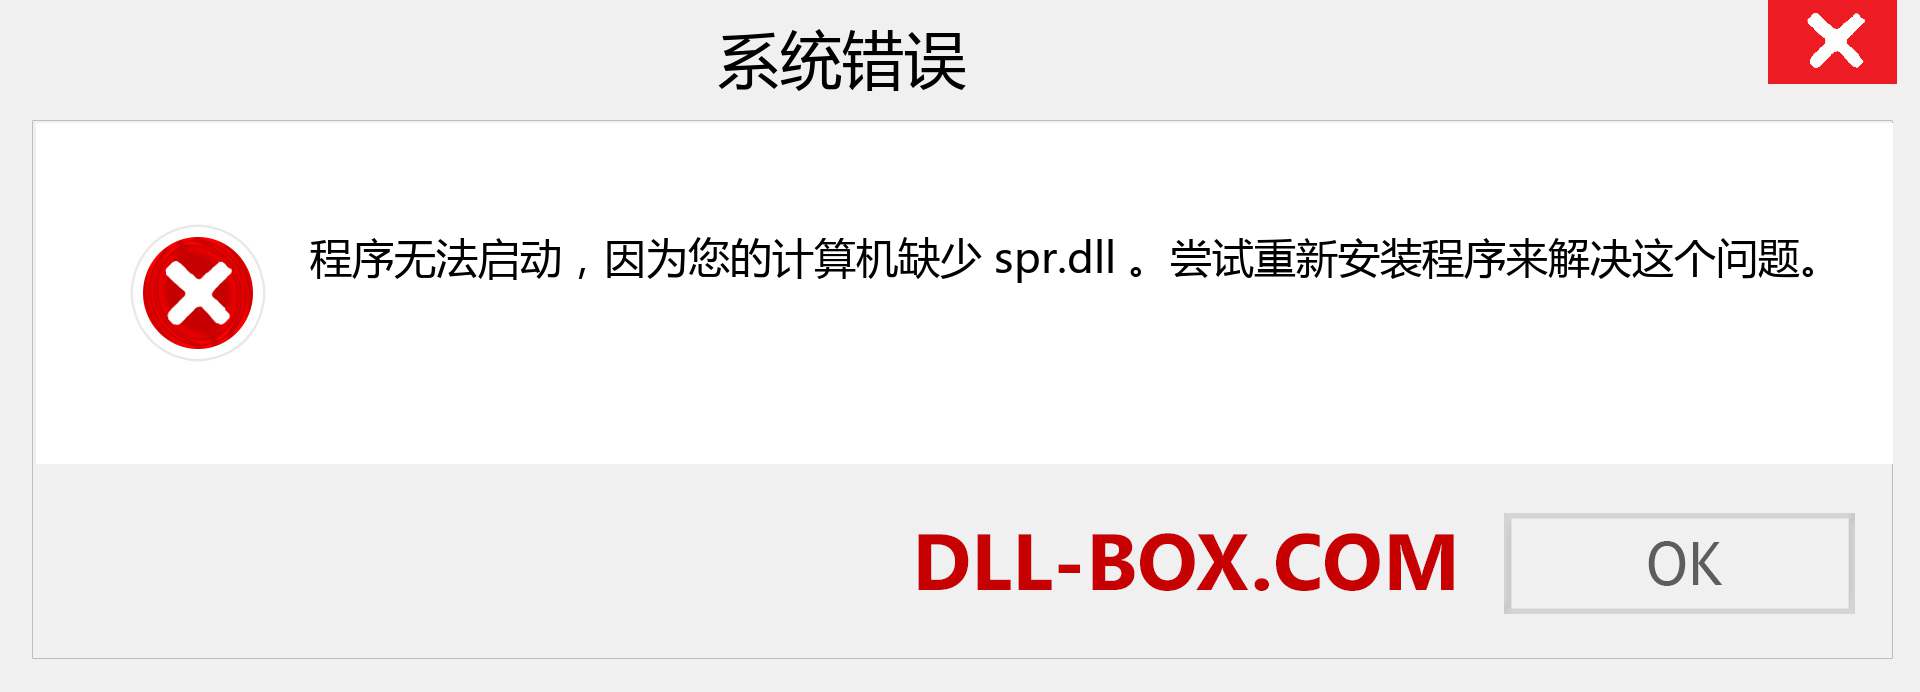 spr.dll 文件丢失？。 适用于 Windows 7、8、10 的下载 - 修复 Windows、照片、图像上的 spr dll 丢失错误